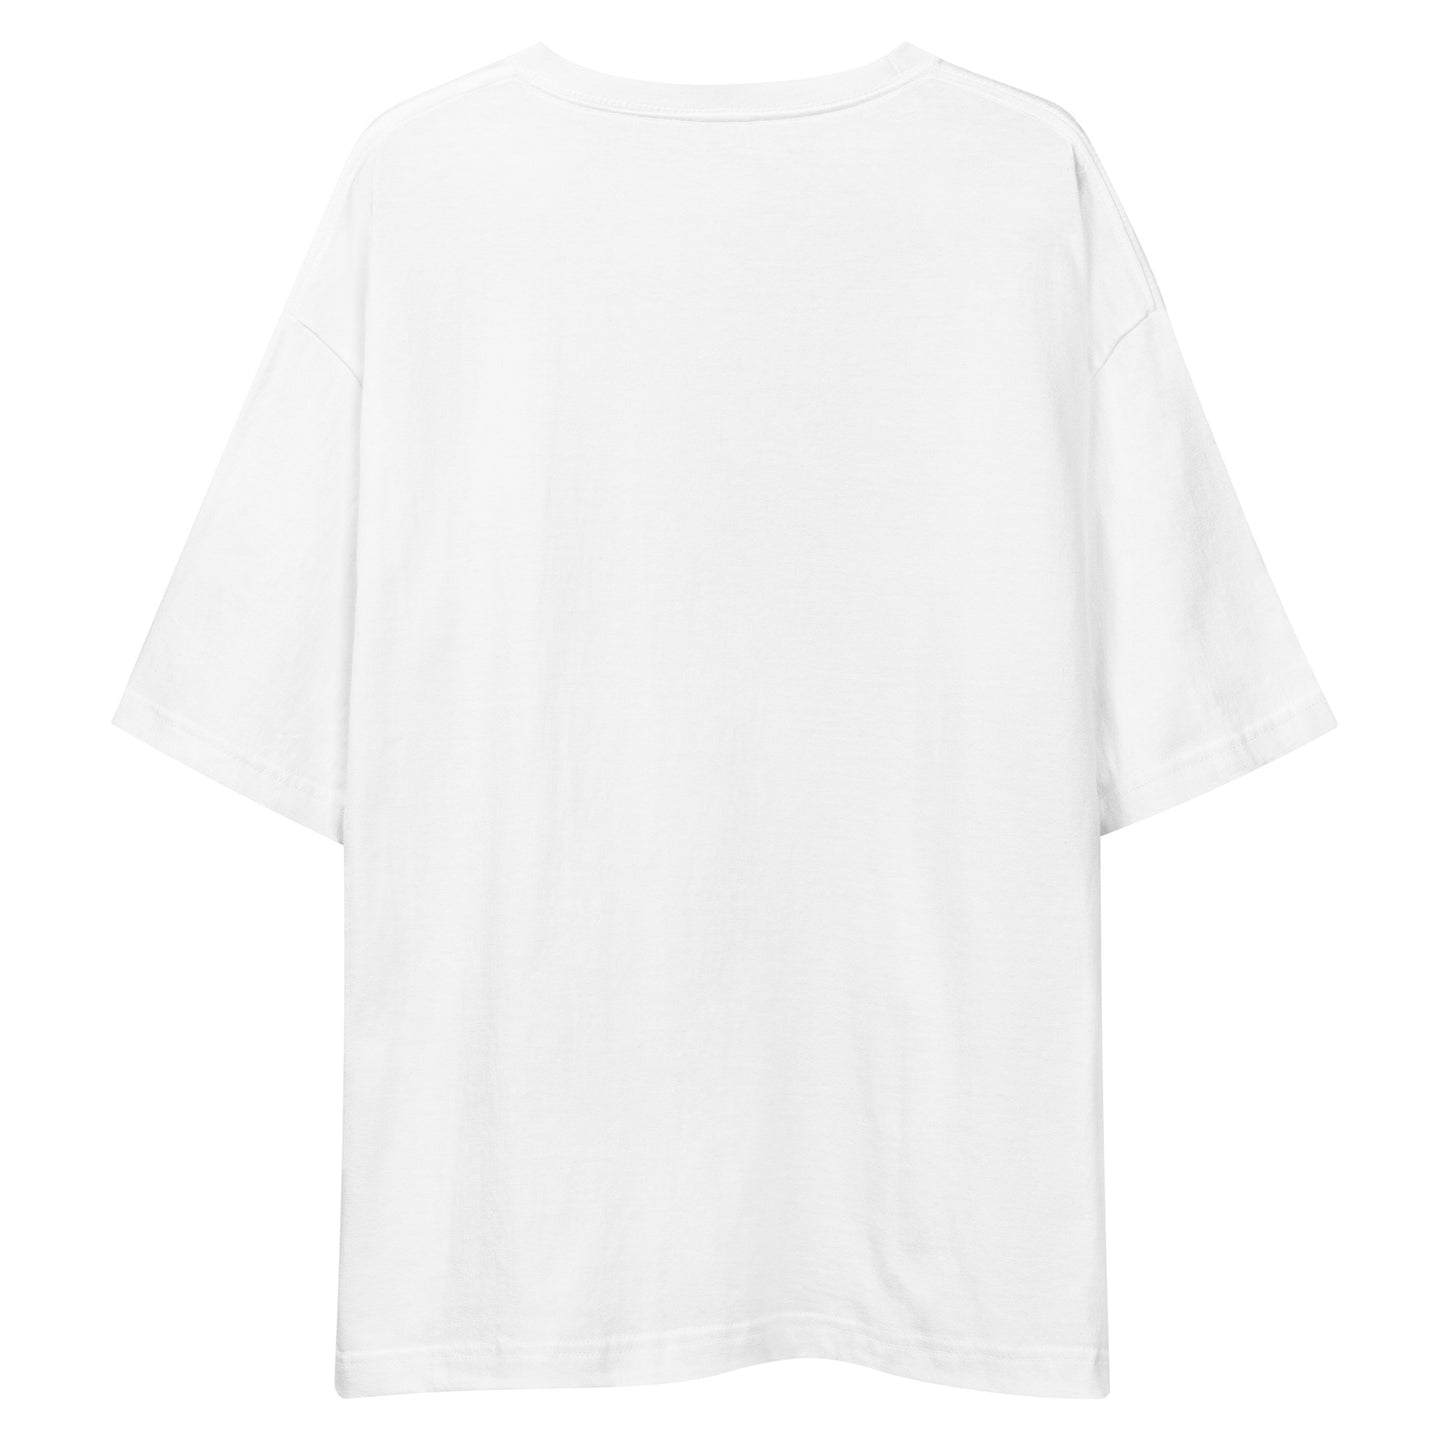 G205 - Tシャツ/ビッグシルエット(チアリーダー :ホワイト/グレー )